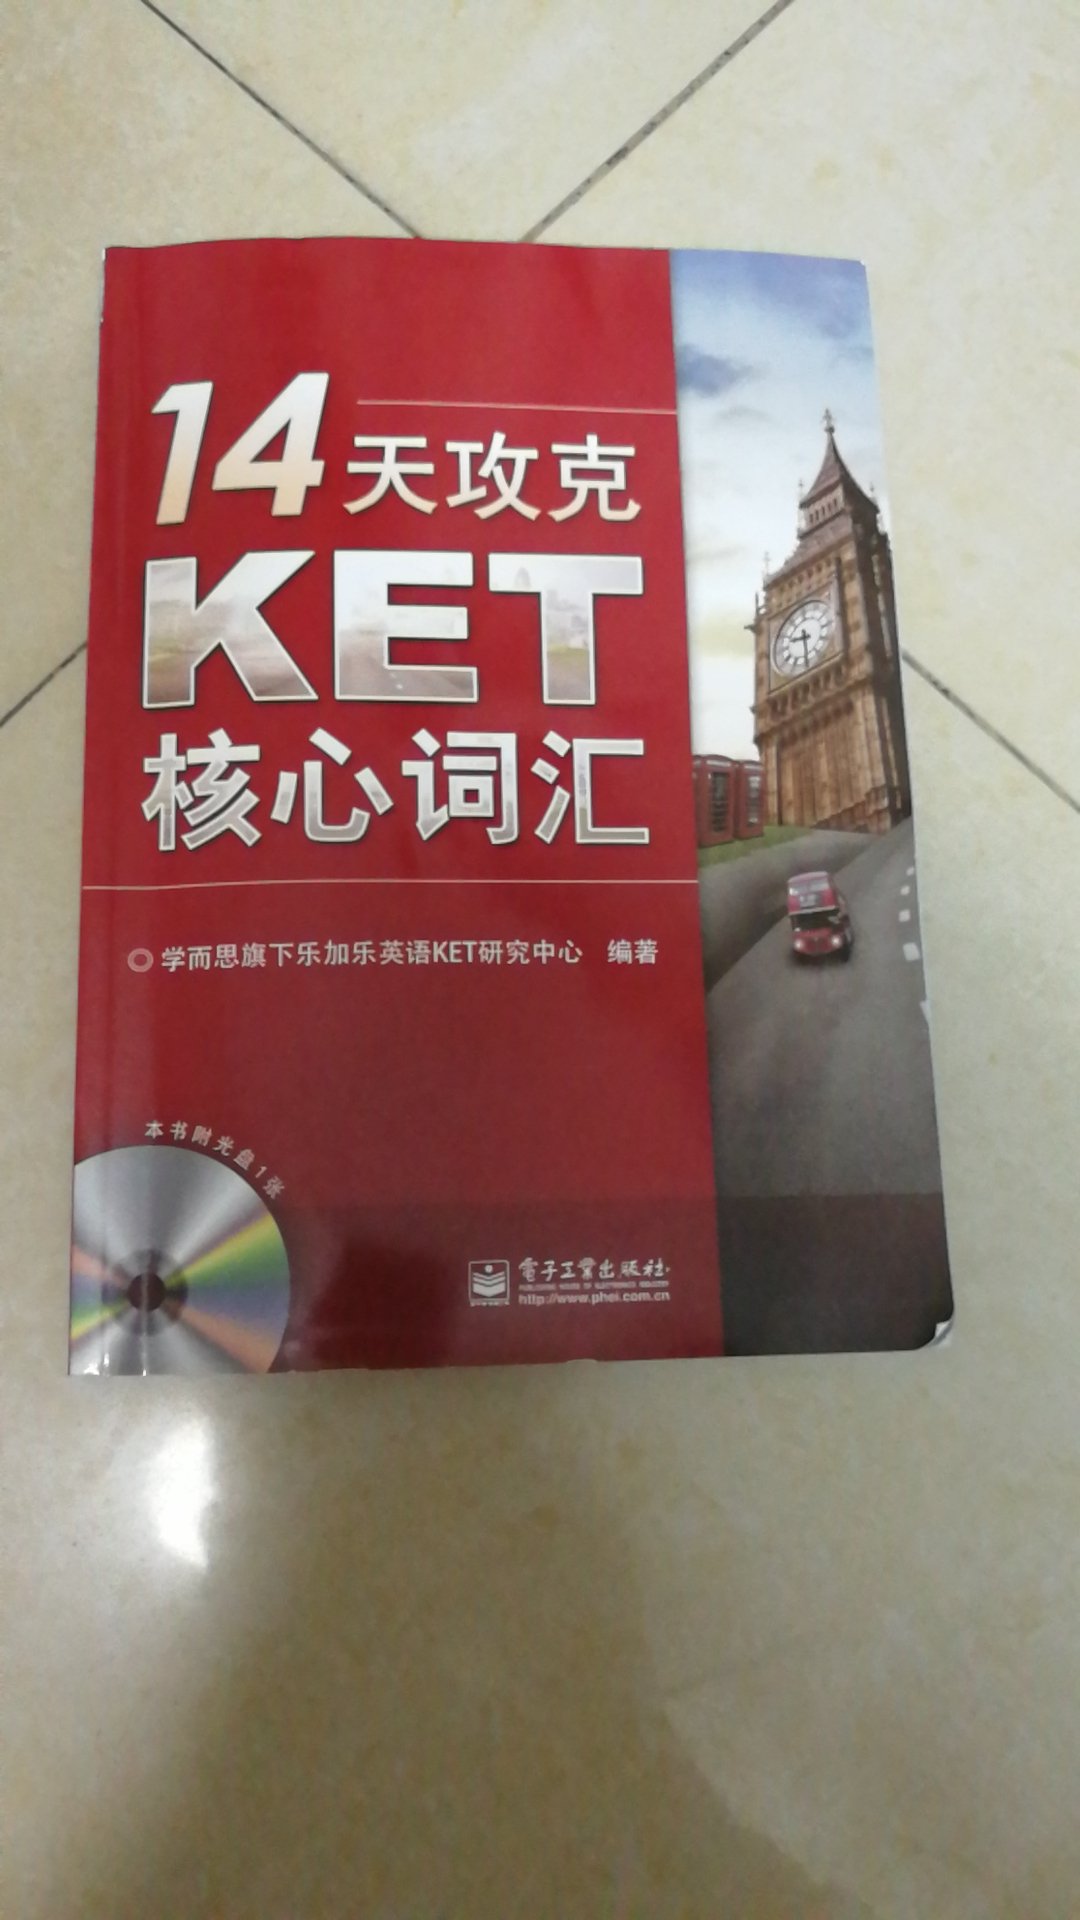 老师推荐的，考KET的同学最好买一本，帮助巩固词汇。